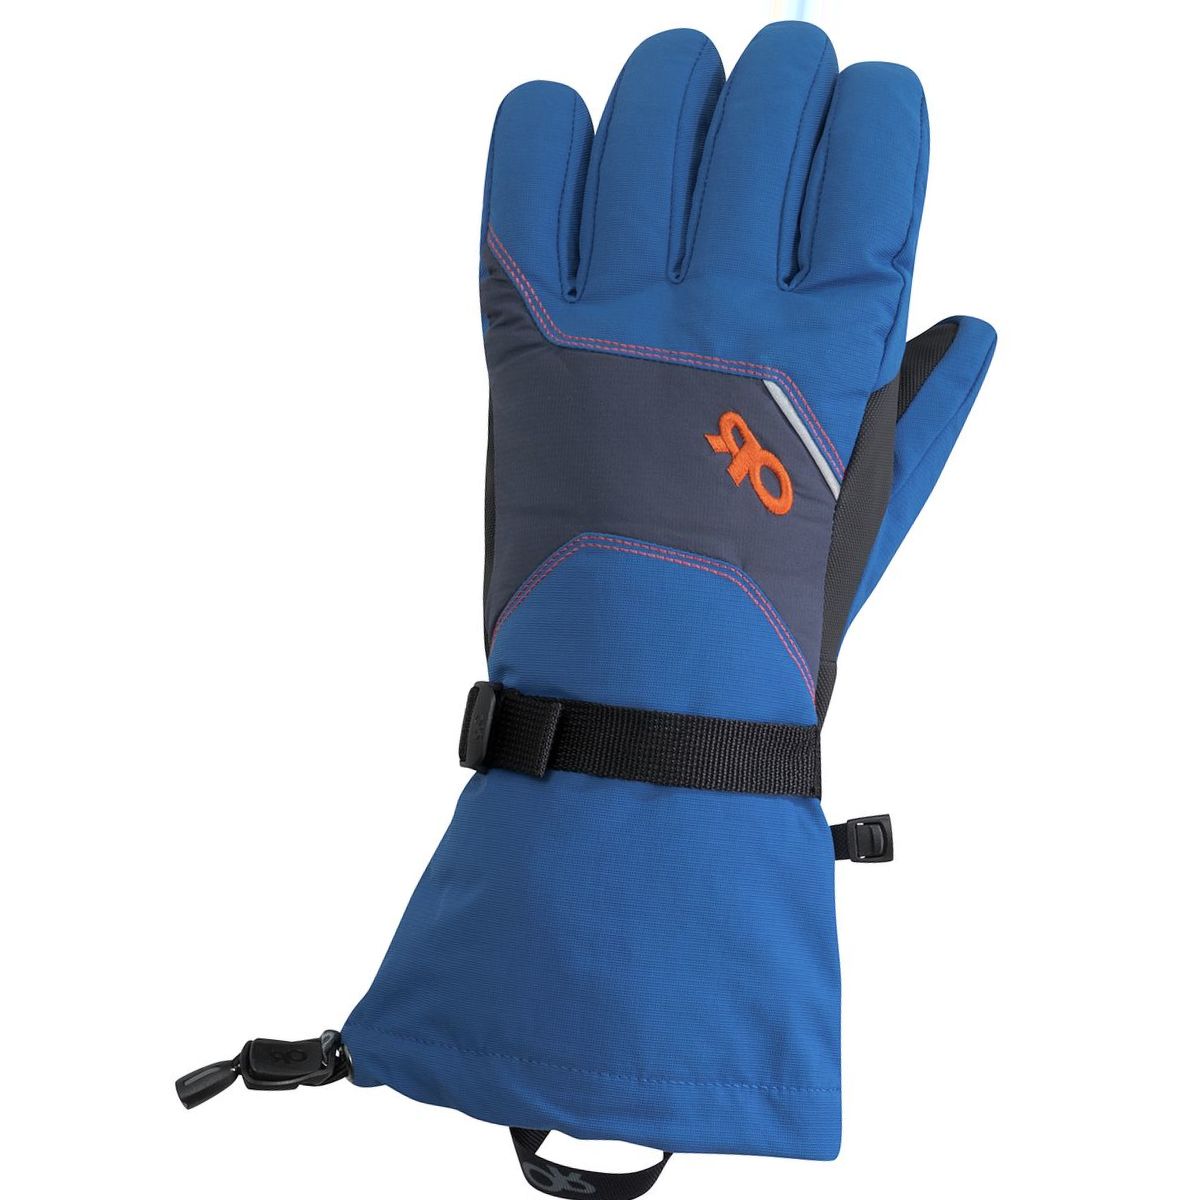 Outdoor Research Adrenaline Glove - Men's